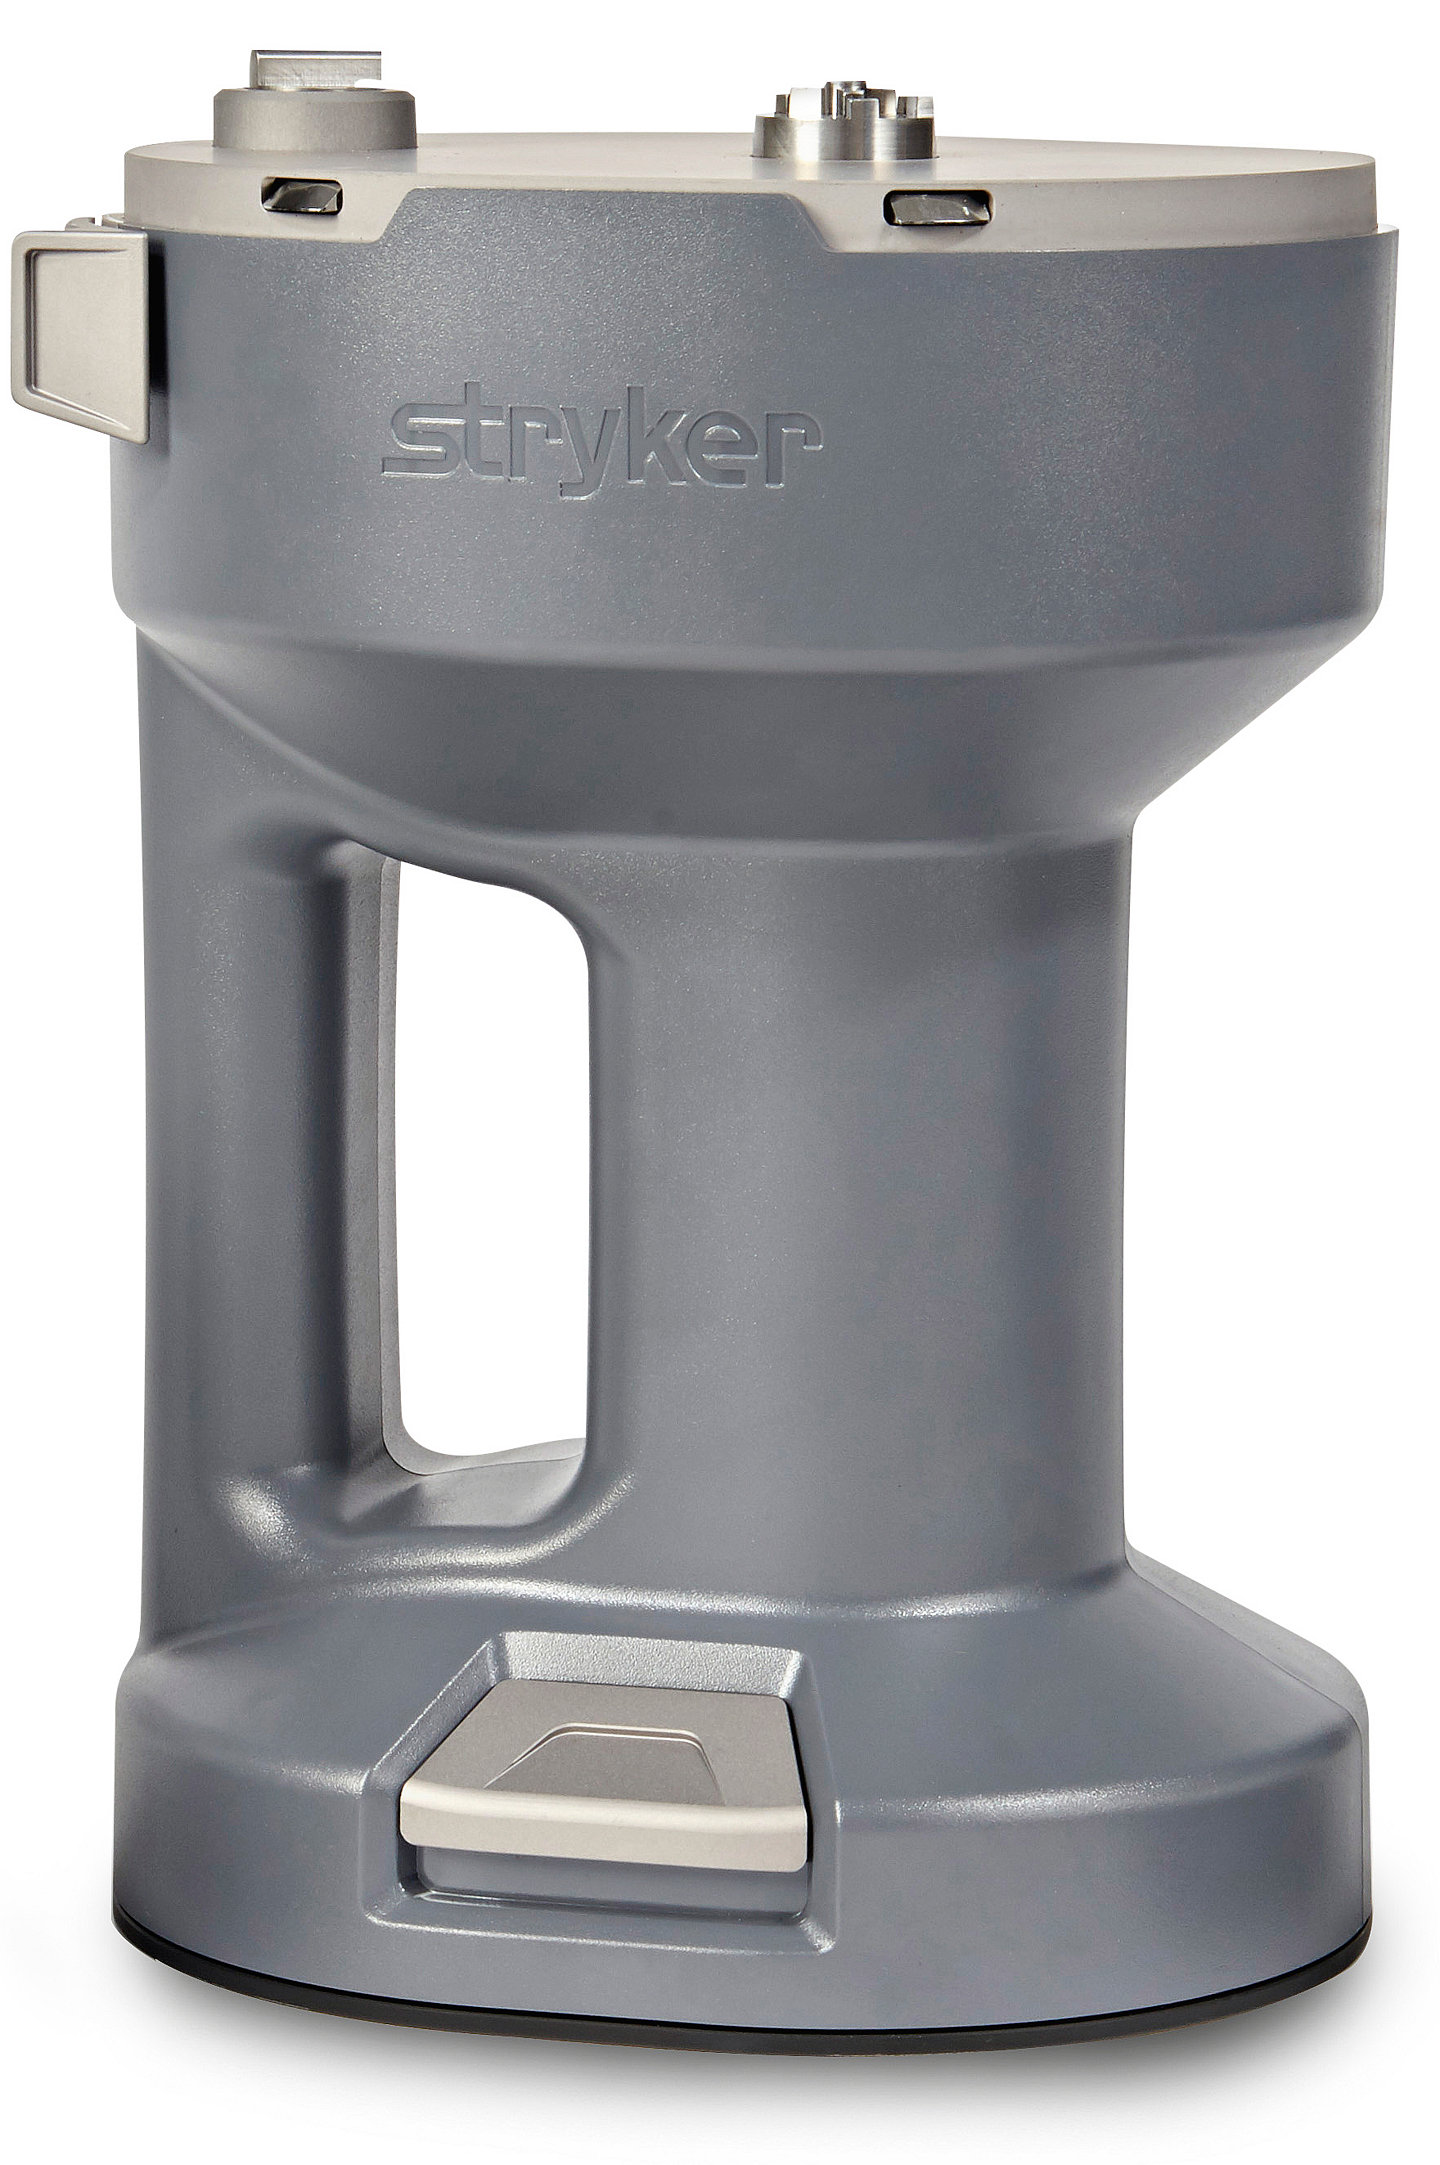 2022-09-21-Stryker-2641